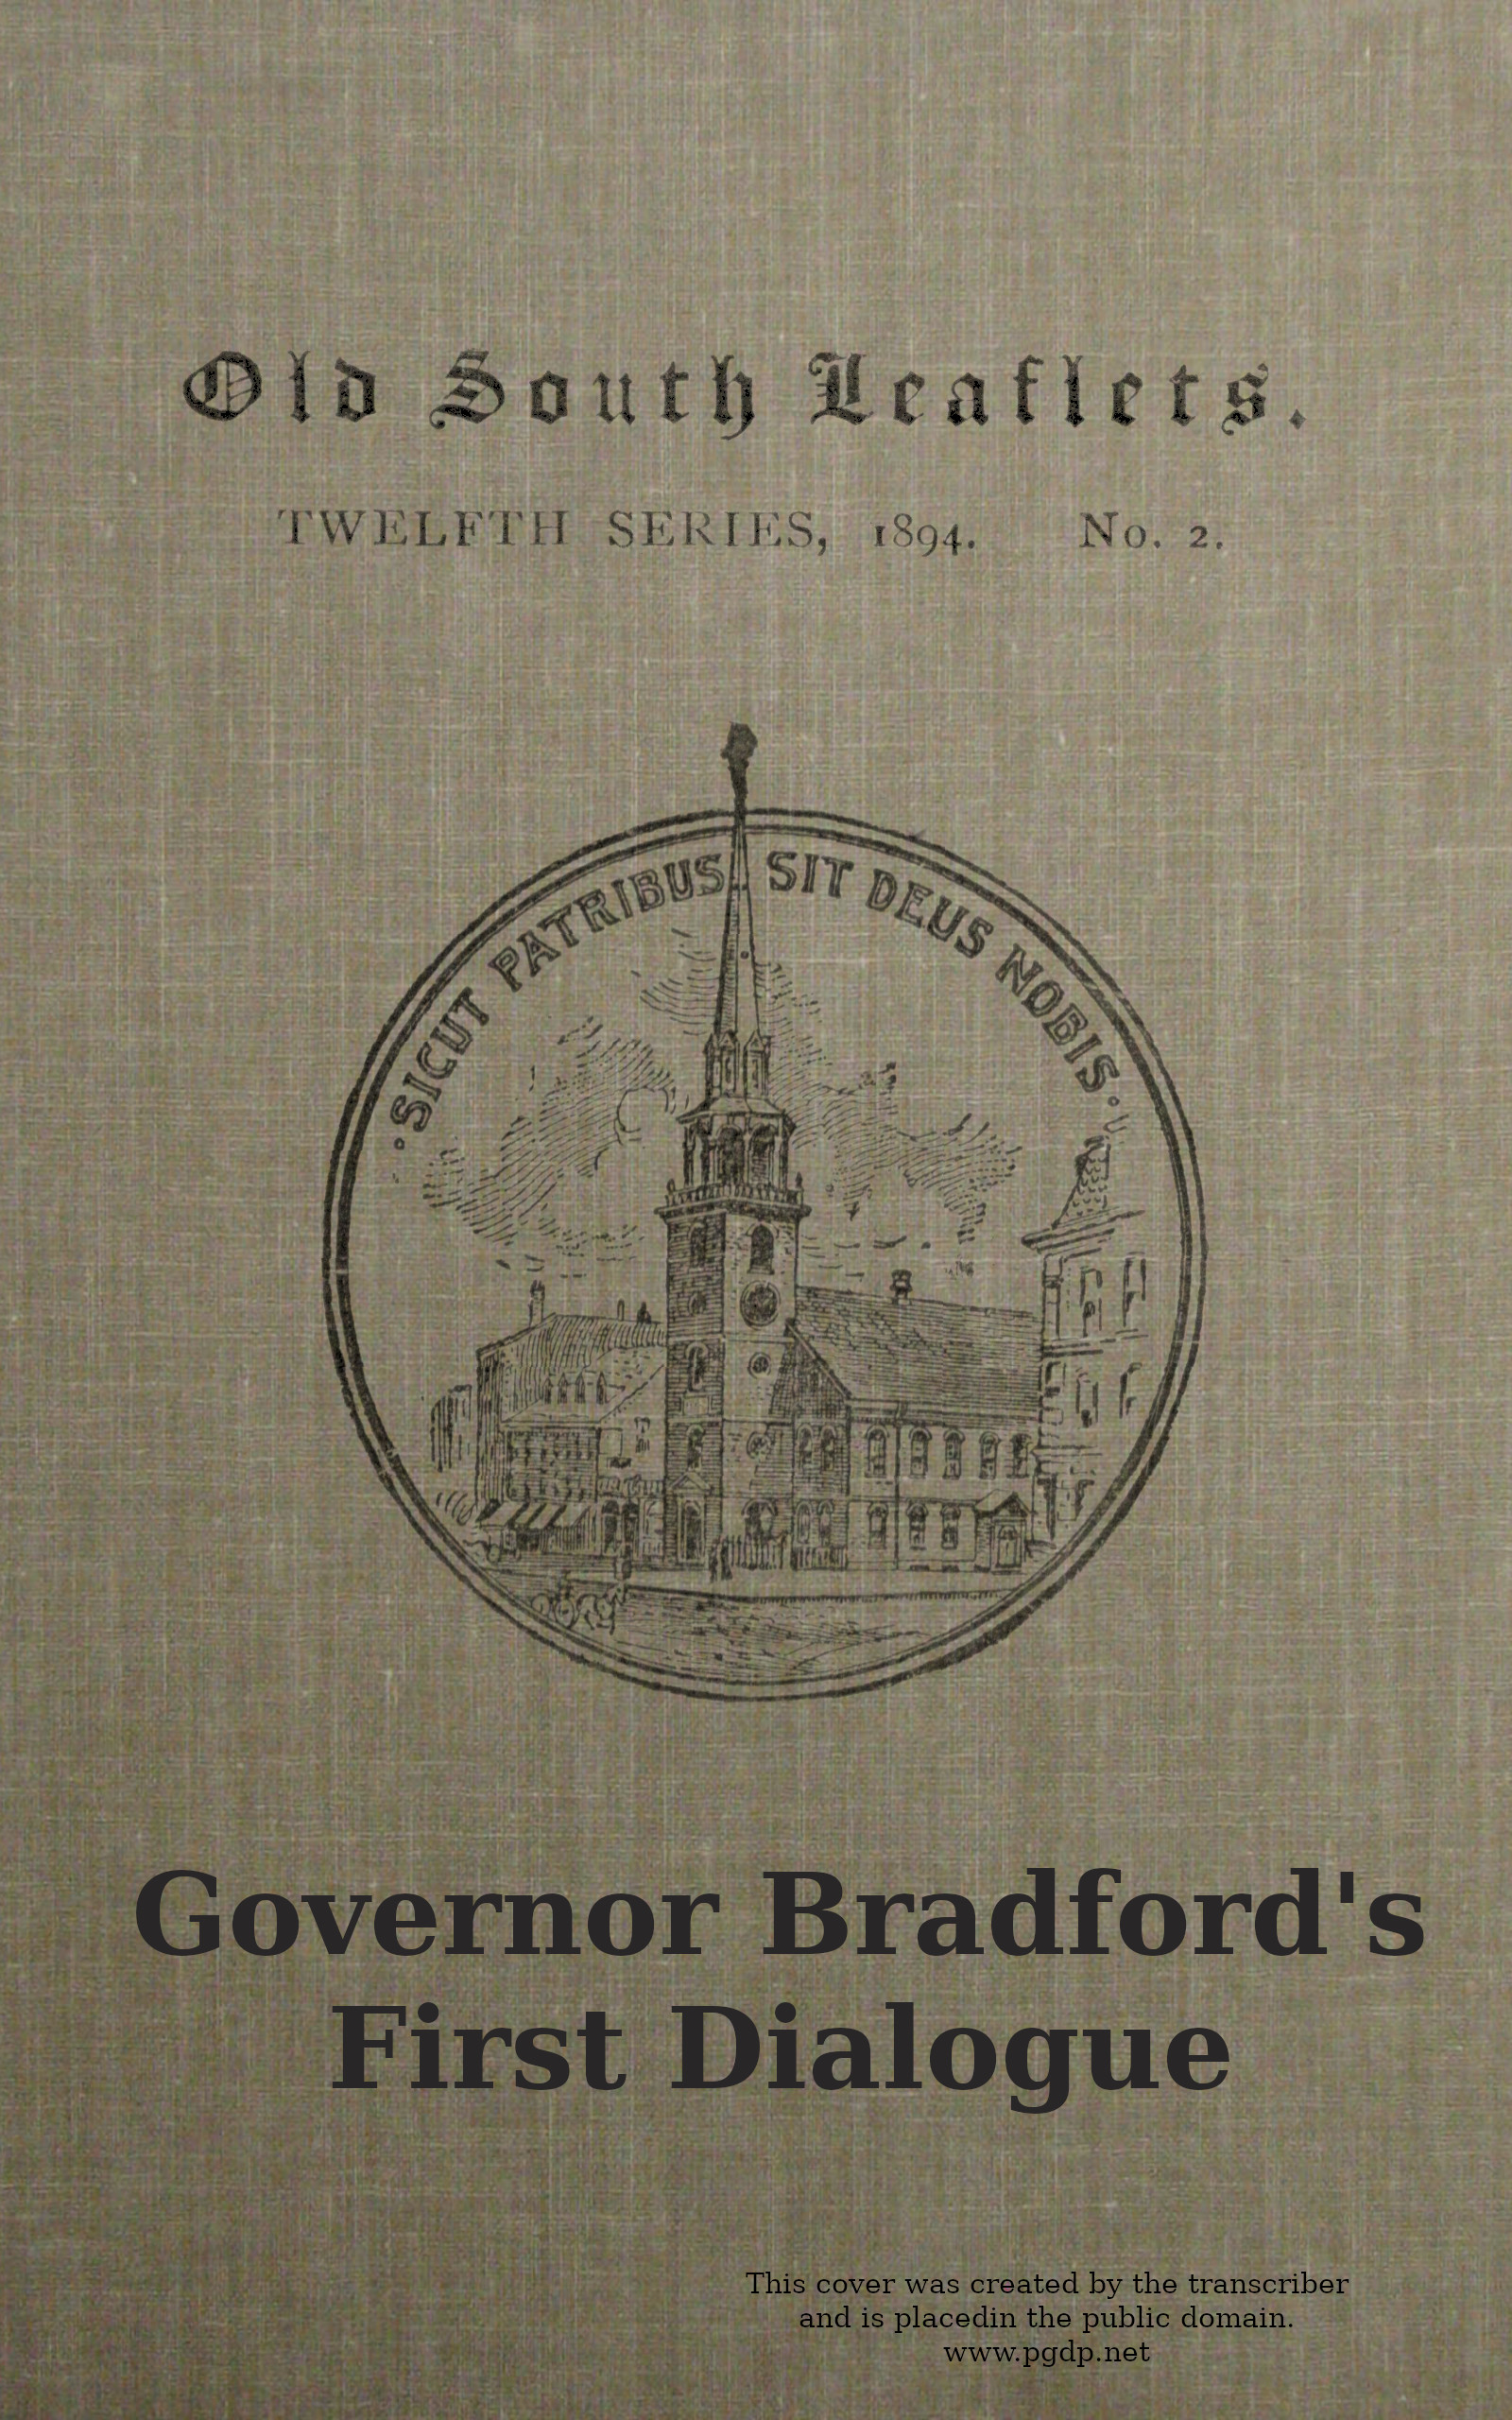 Governor Bradford's first dialogue